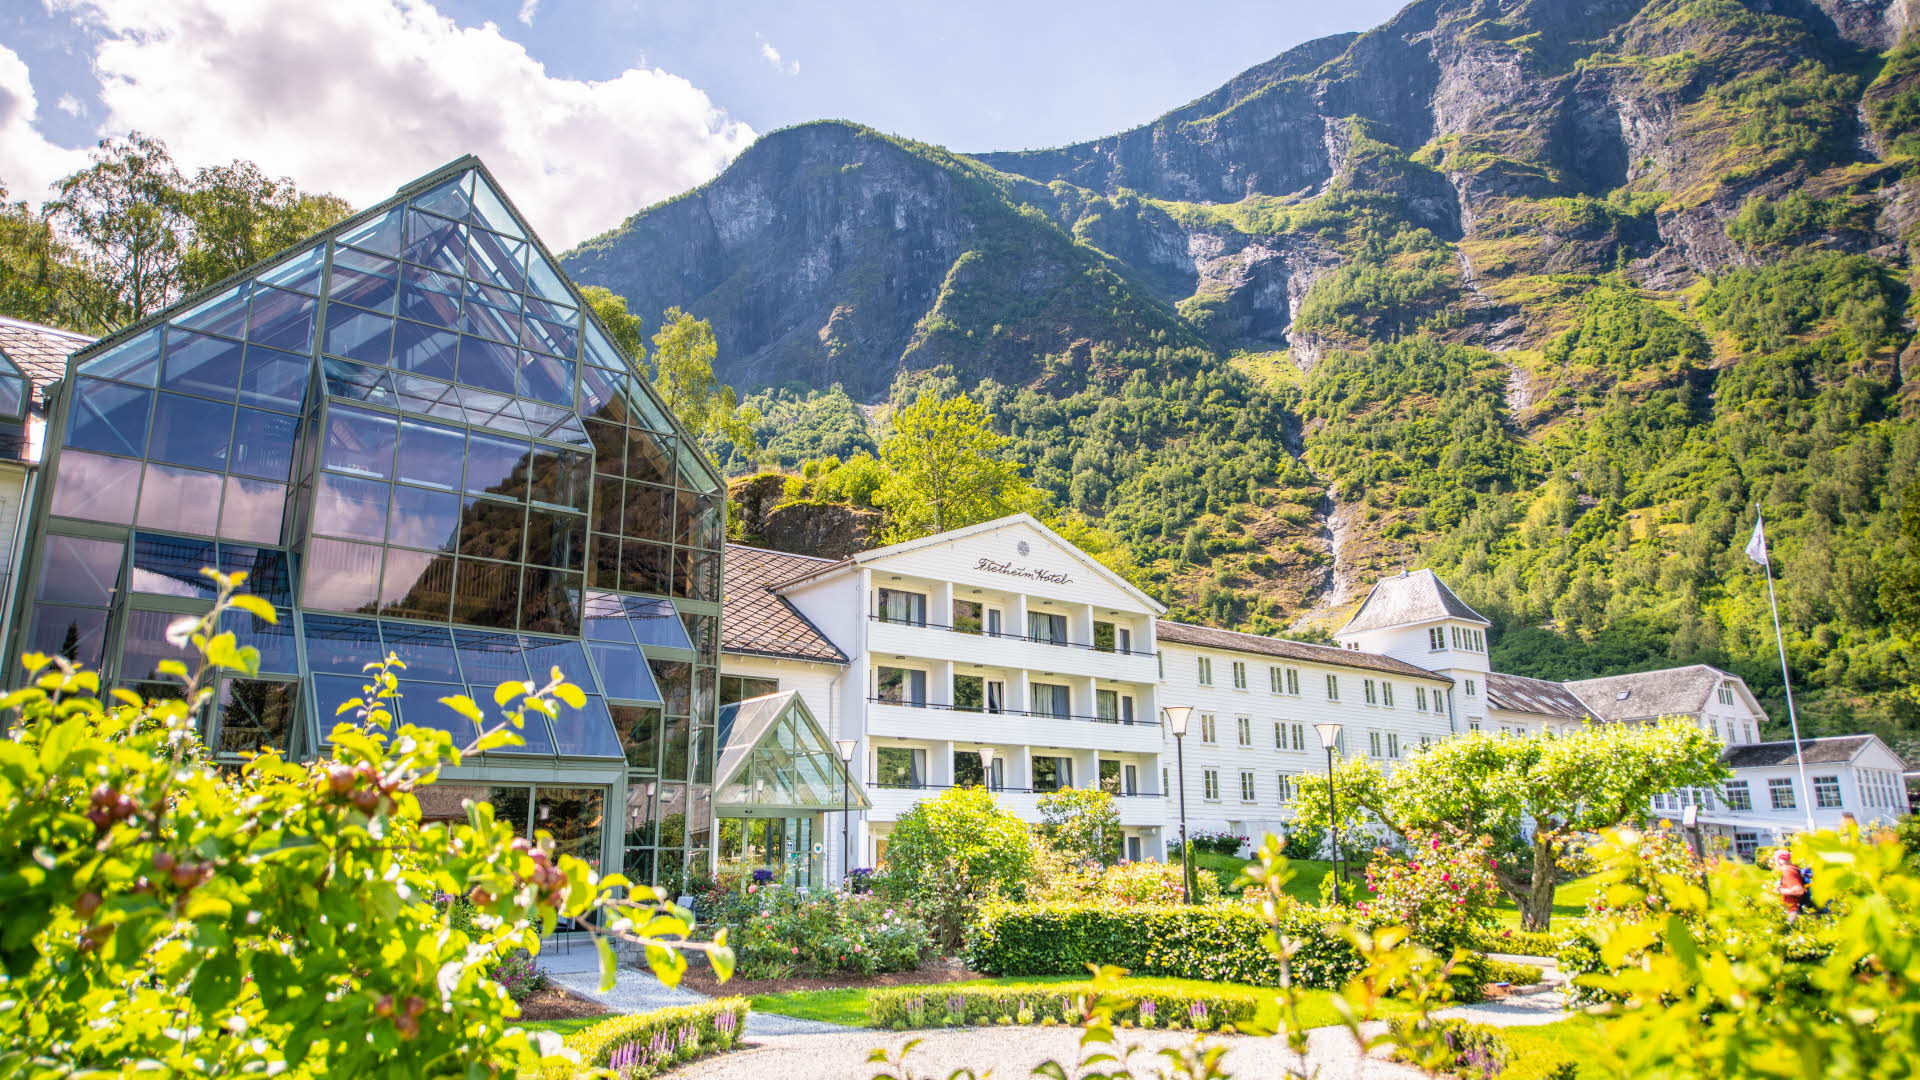 从前景中的花园看陡峭山脉前的佛莱姆酒店 (Fretheim Hotel)。